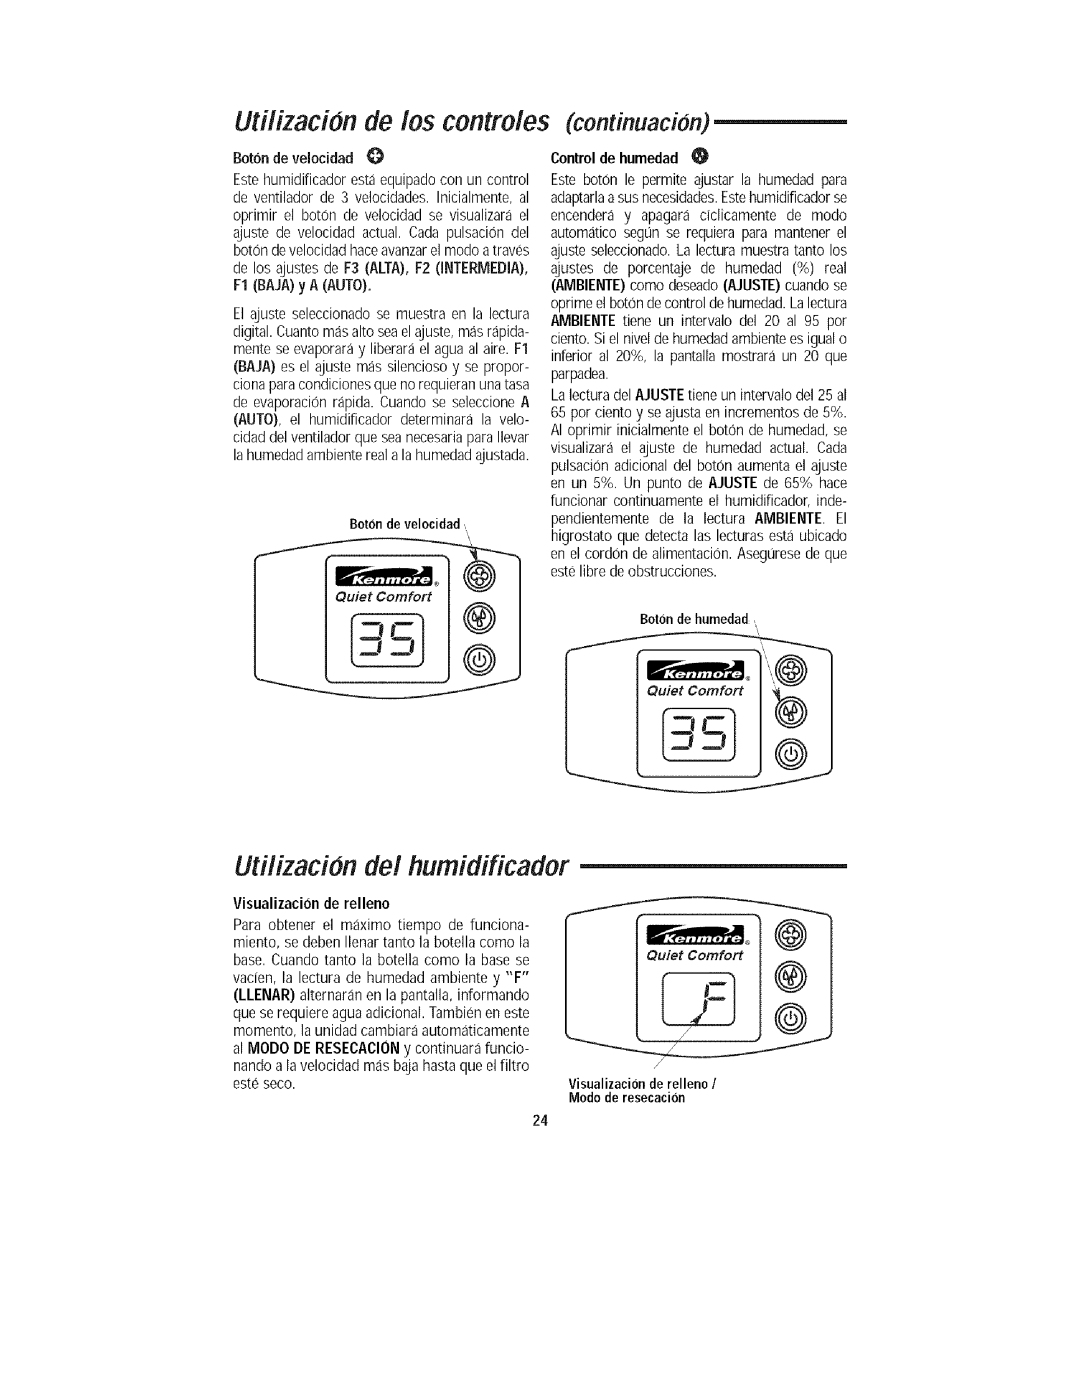 Kenmore 758.15408 manual Utflizacbn de los controles continuacion, Utilizacbn del humidificador, Control de humedad 